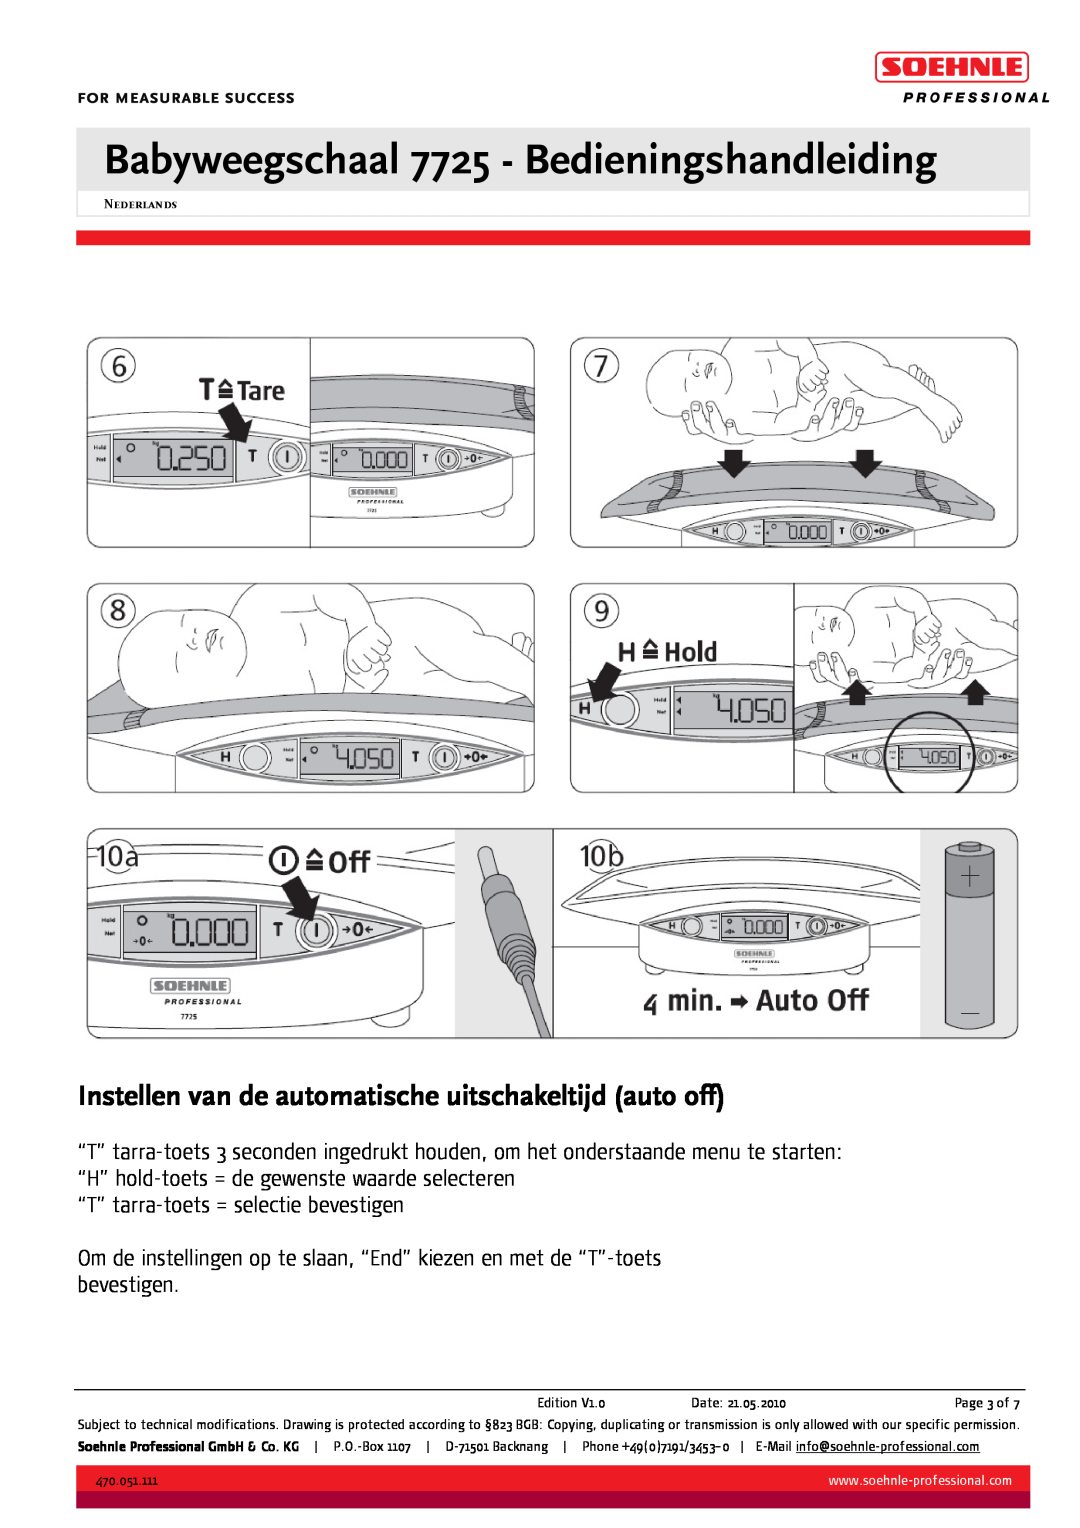 Soehnle BABYWEEGSCHAAL 7725 manual Instellen van de automatische uitschakeltijd auto off 